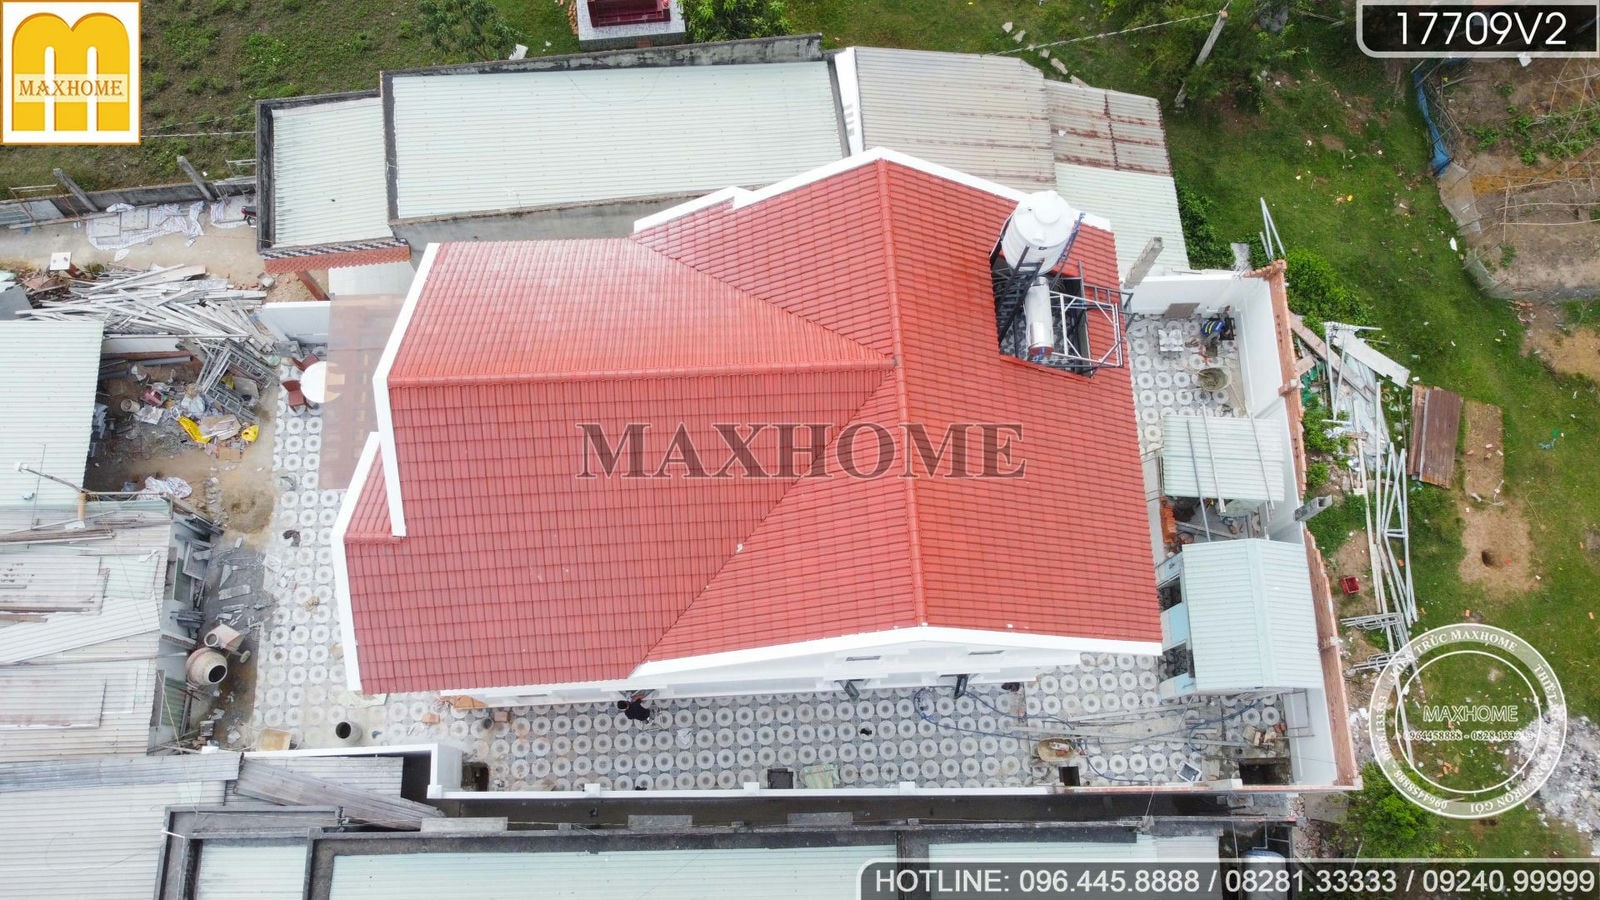 Maxhome kiểm tra chất lượng công trình nhà tân cổ mái Thái tại Long An